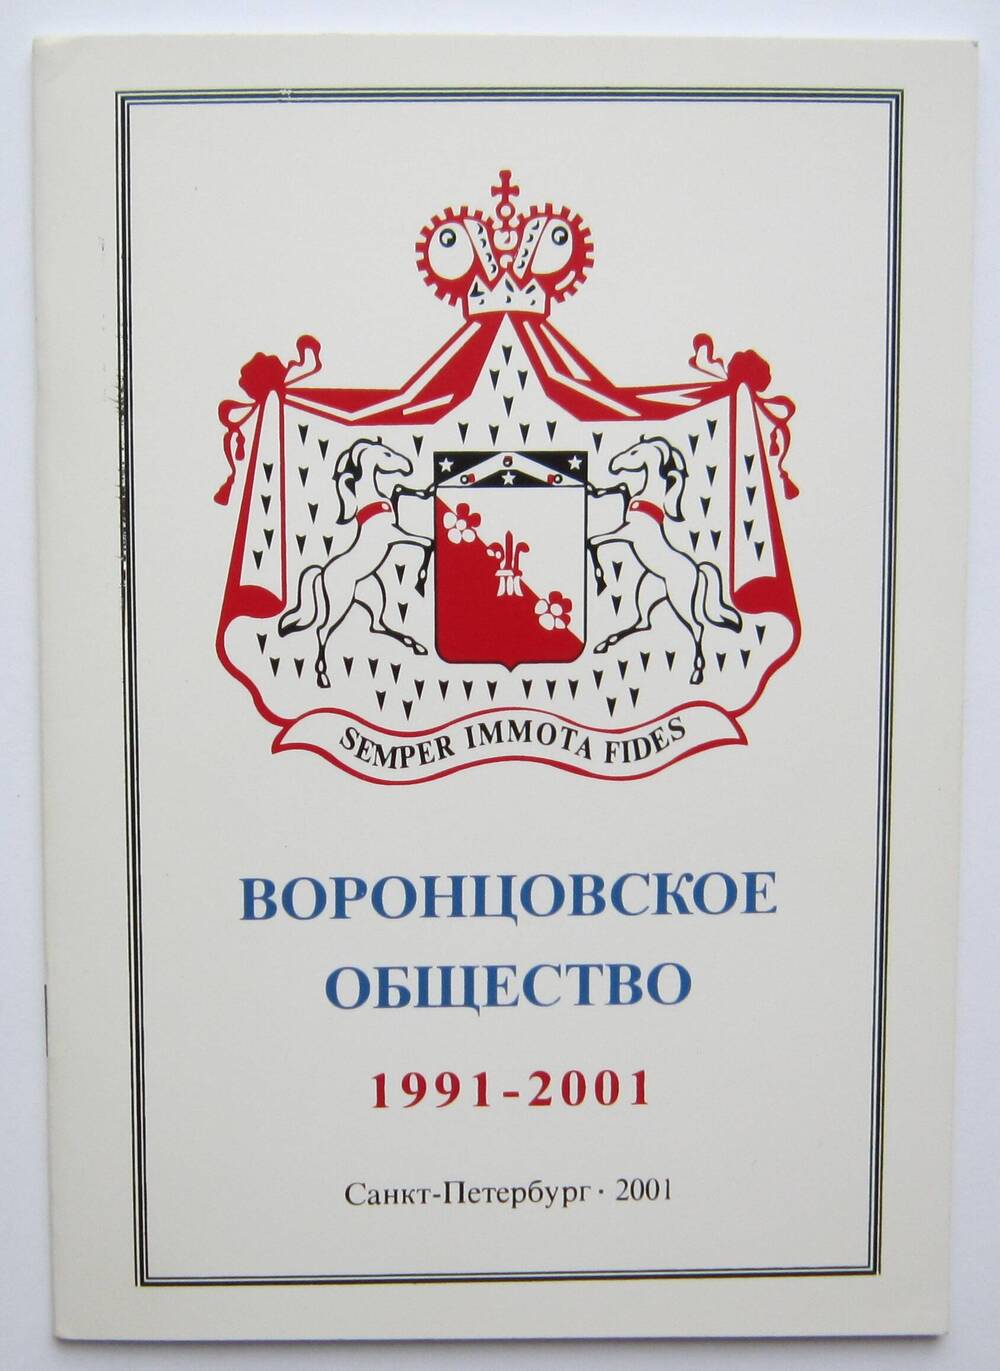 Книга «Воронцовское общество 1991-2001 г.».